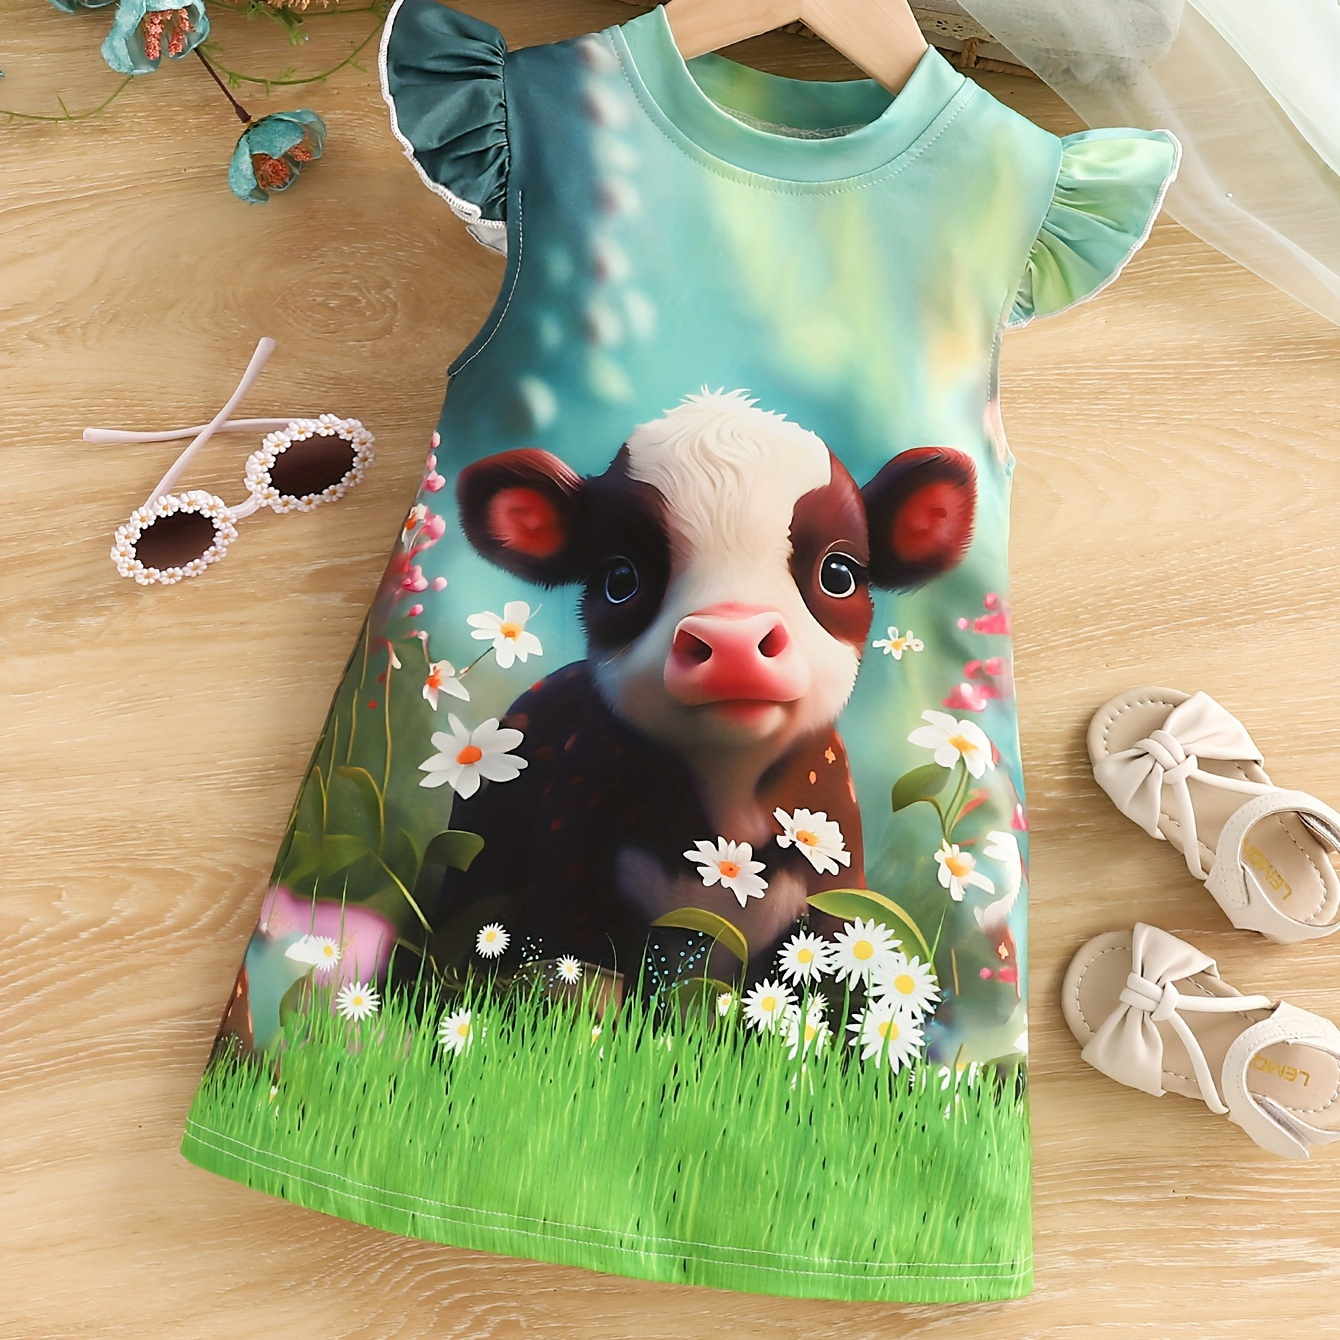 

3d Cartoon Cow/unicorn/elephant Print Flutter Trim Sleeveless Dress For Girls Summer Party Gift